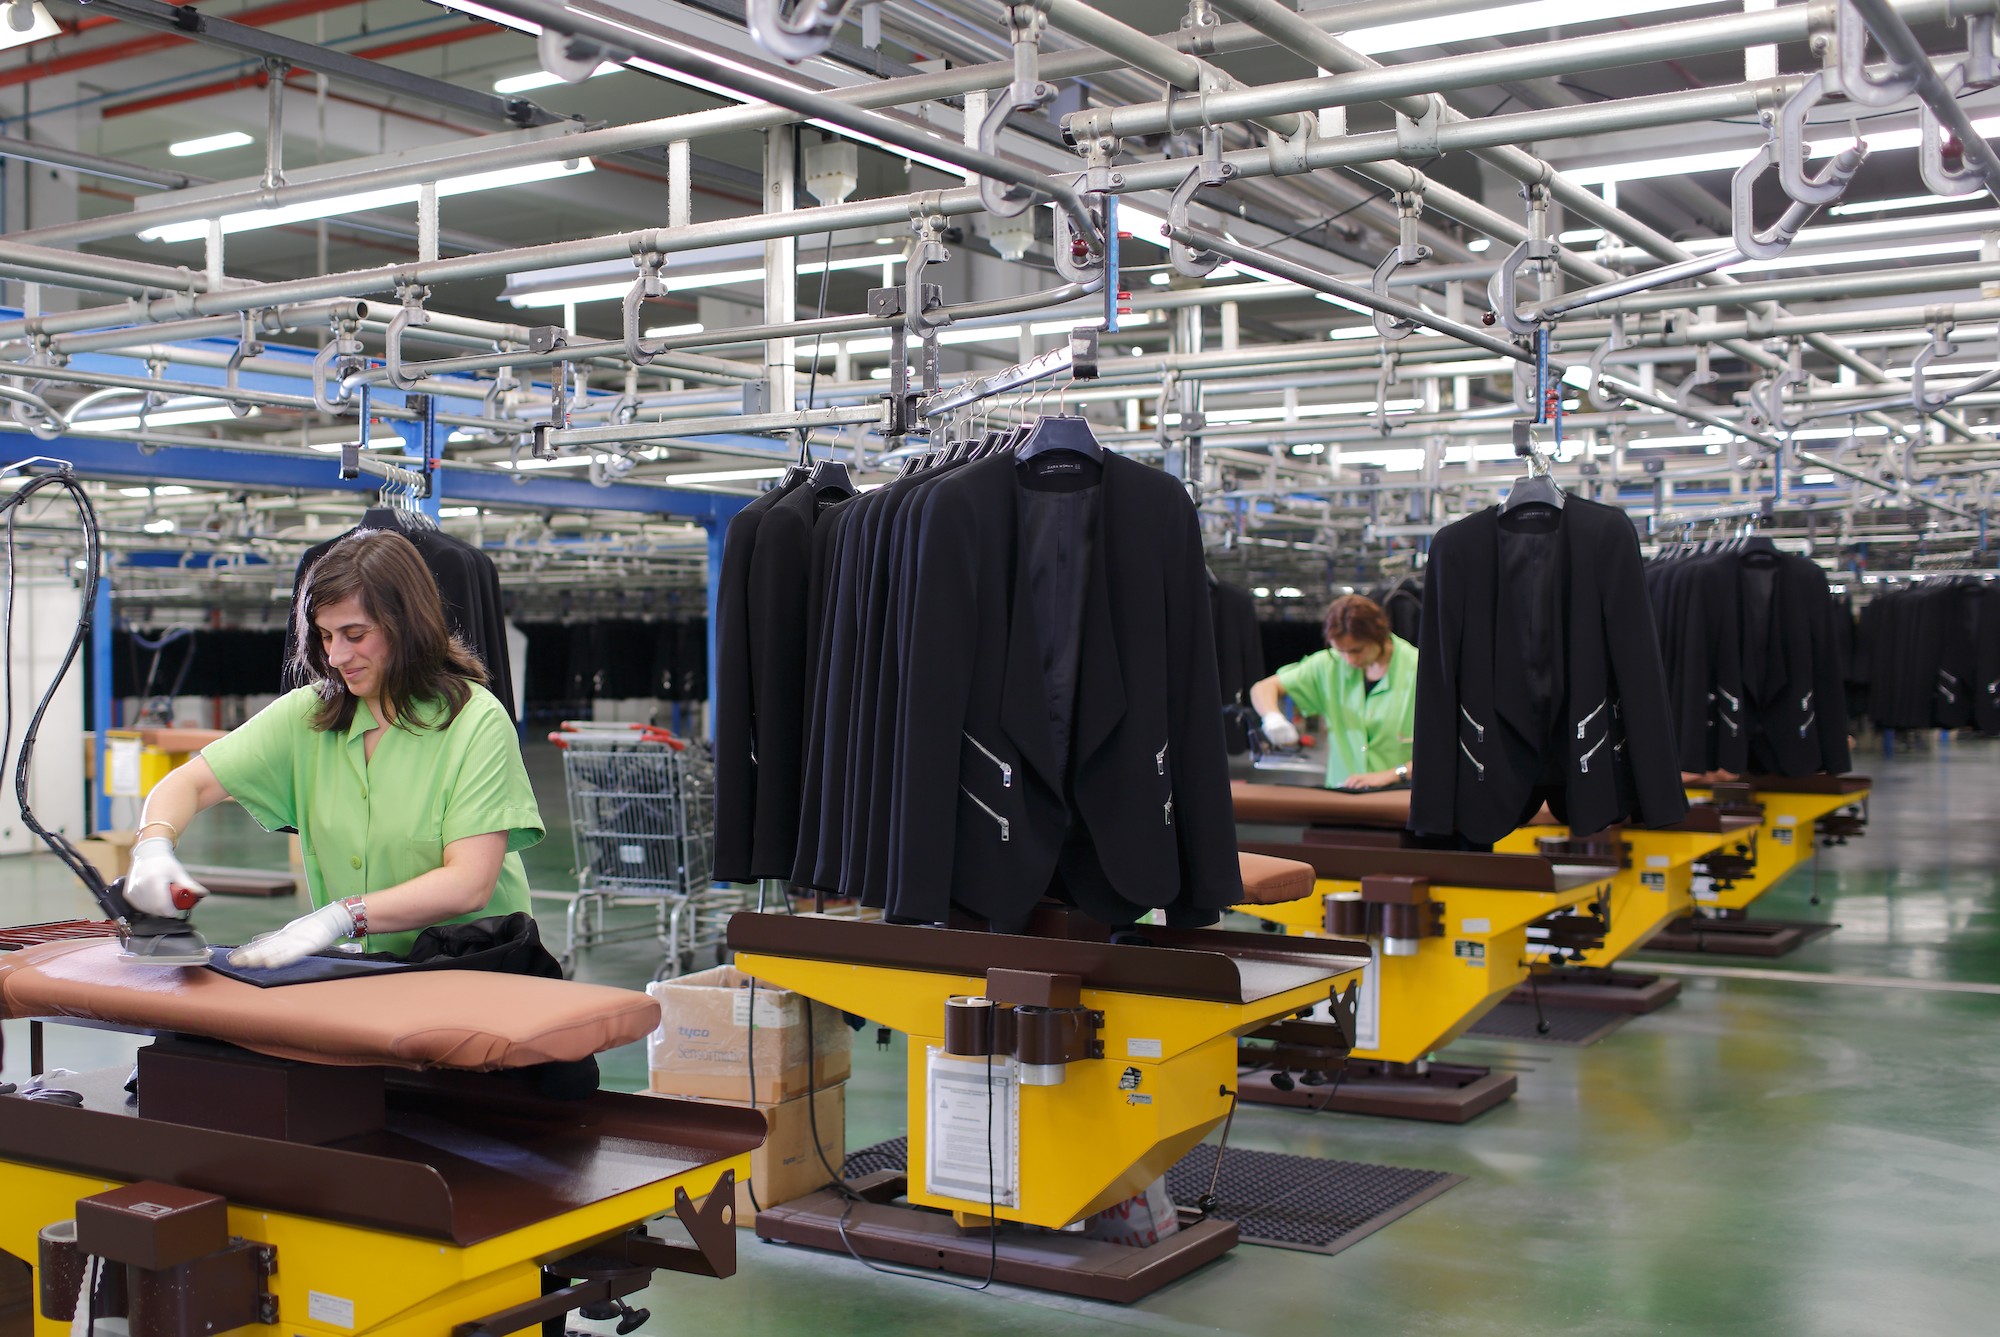 Фабрики одежды производителя. Производство одежды. Фабрика одежды. Швейная промышленность. Швейное производство.